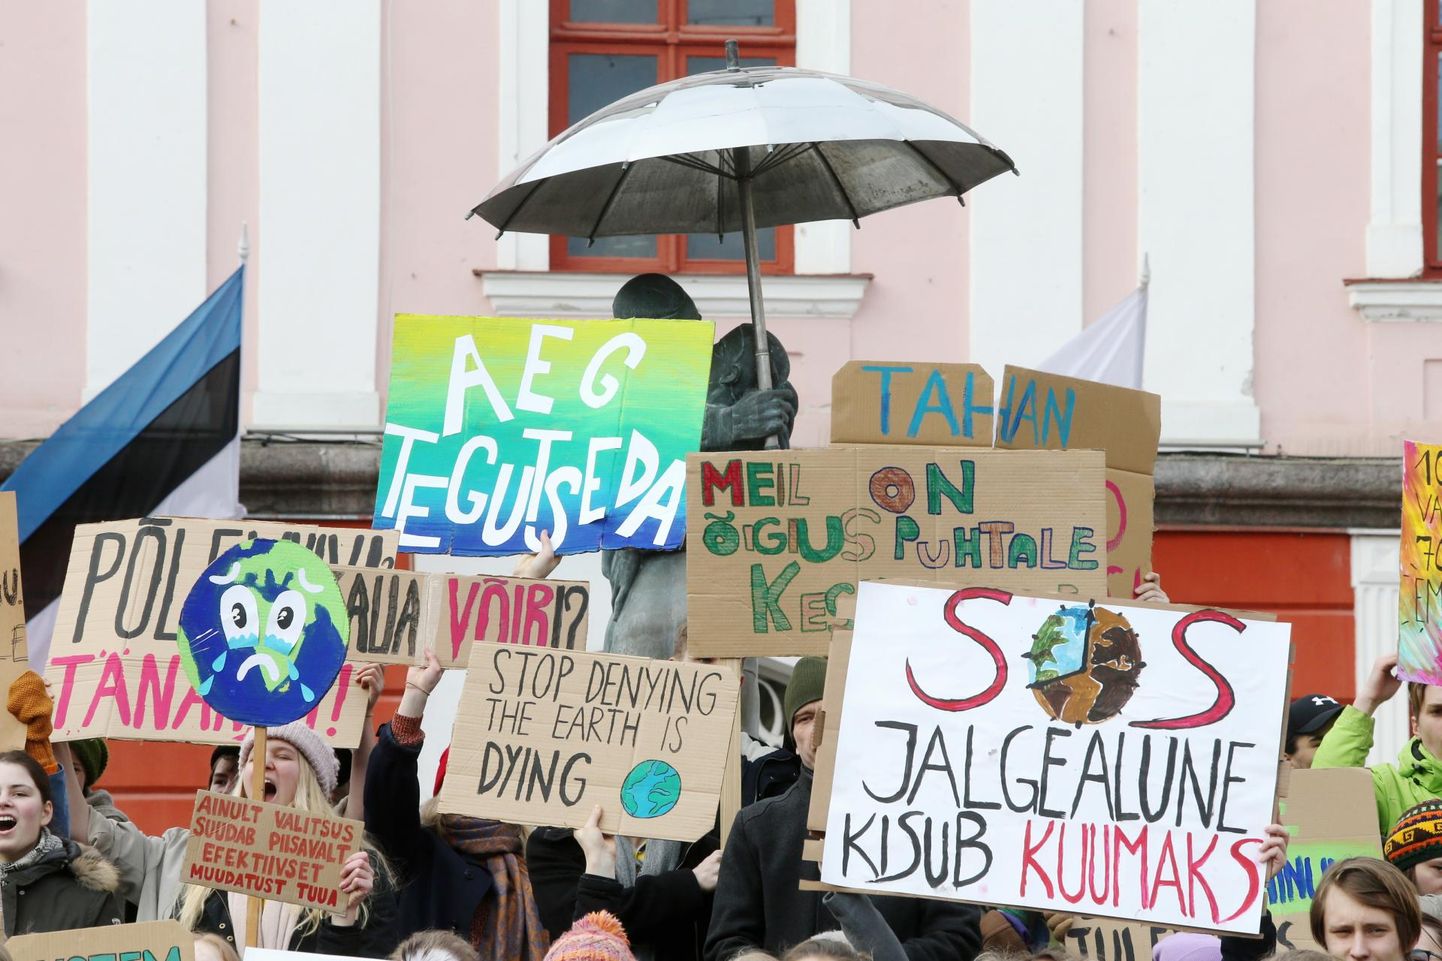 Őpilased protesteerivad kliimamuutuste vastu Tartu raeplatsil.